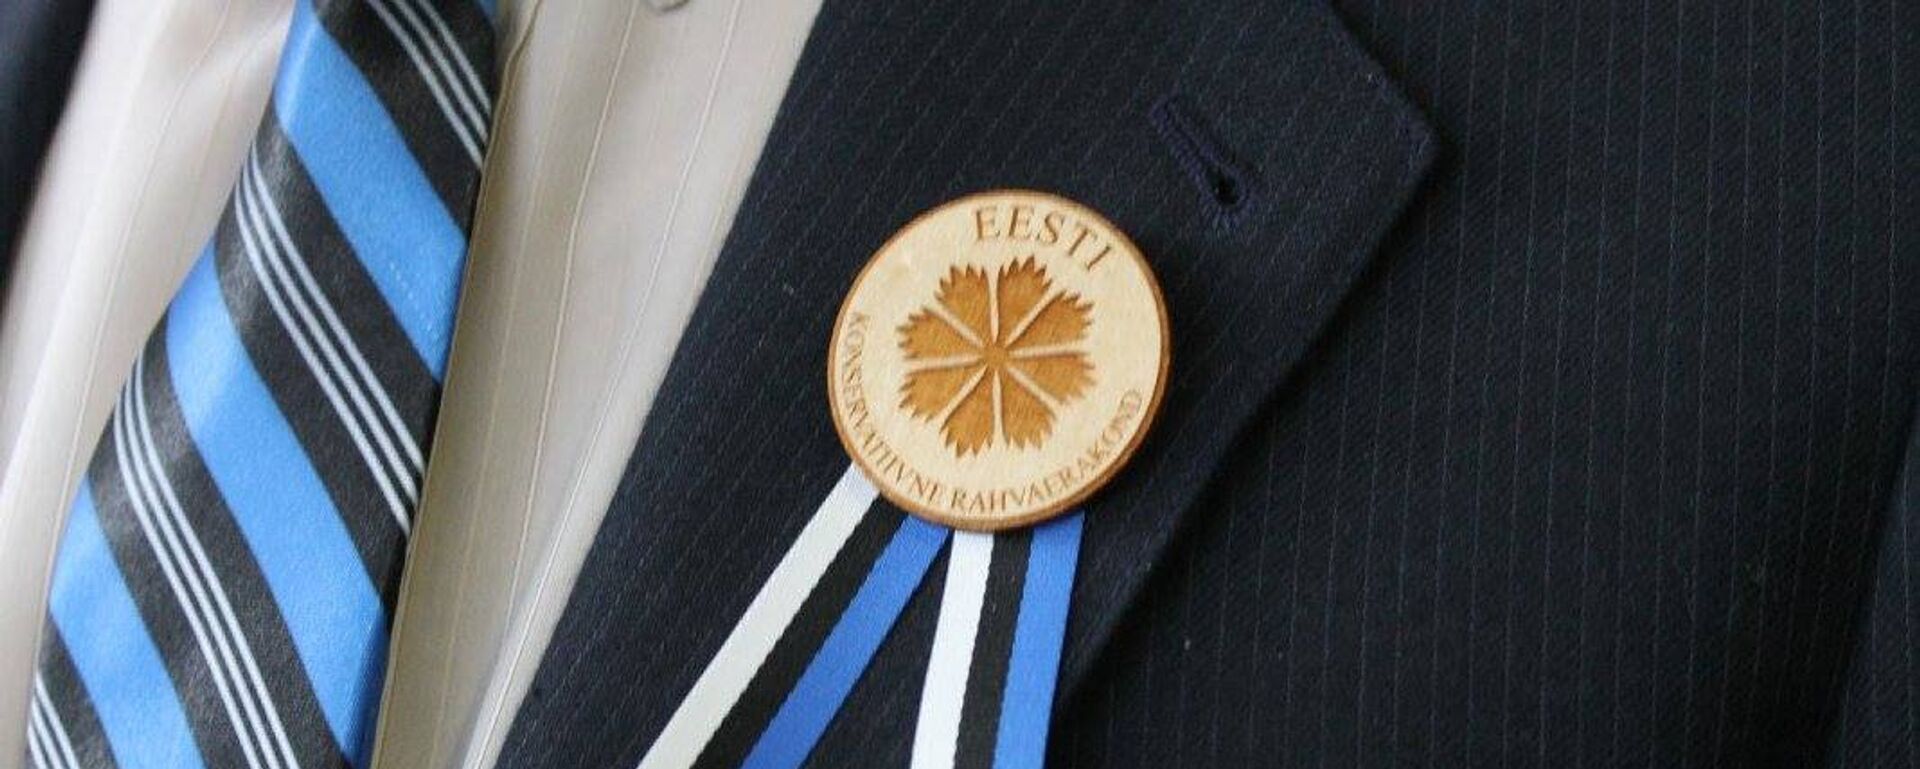 Значок с символикой Консервативной партии Эстонии (EKRE) - Sputnik Латвия, 1920, 04.04.2019